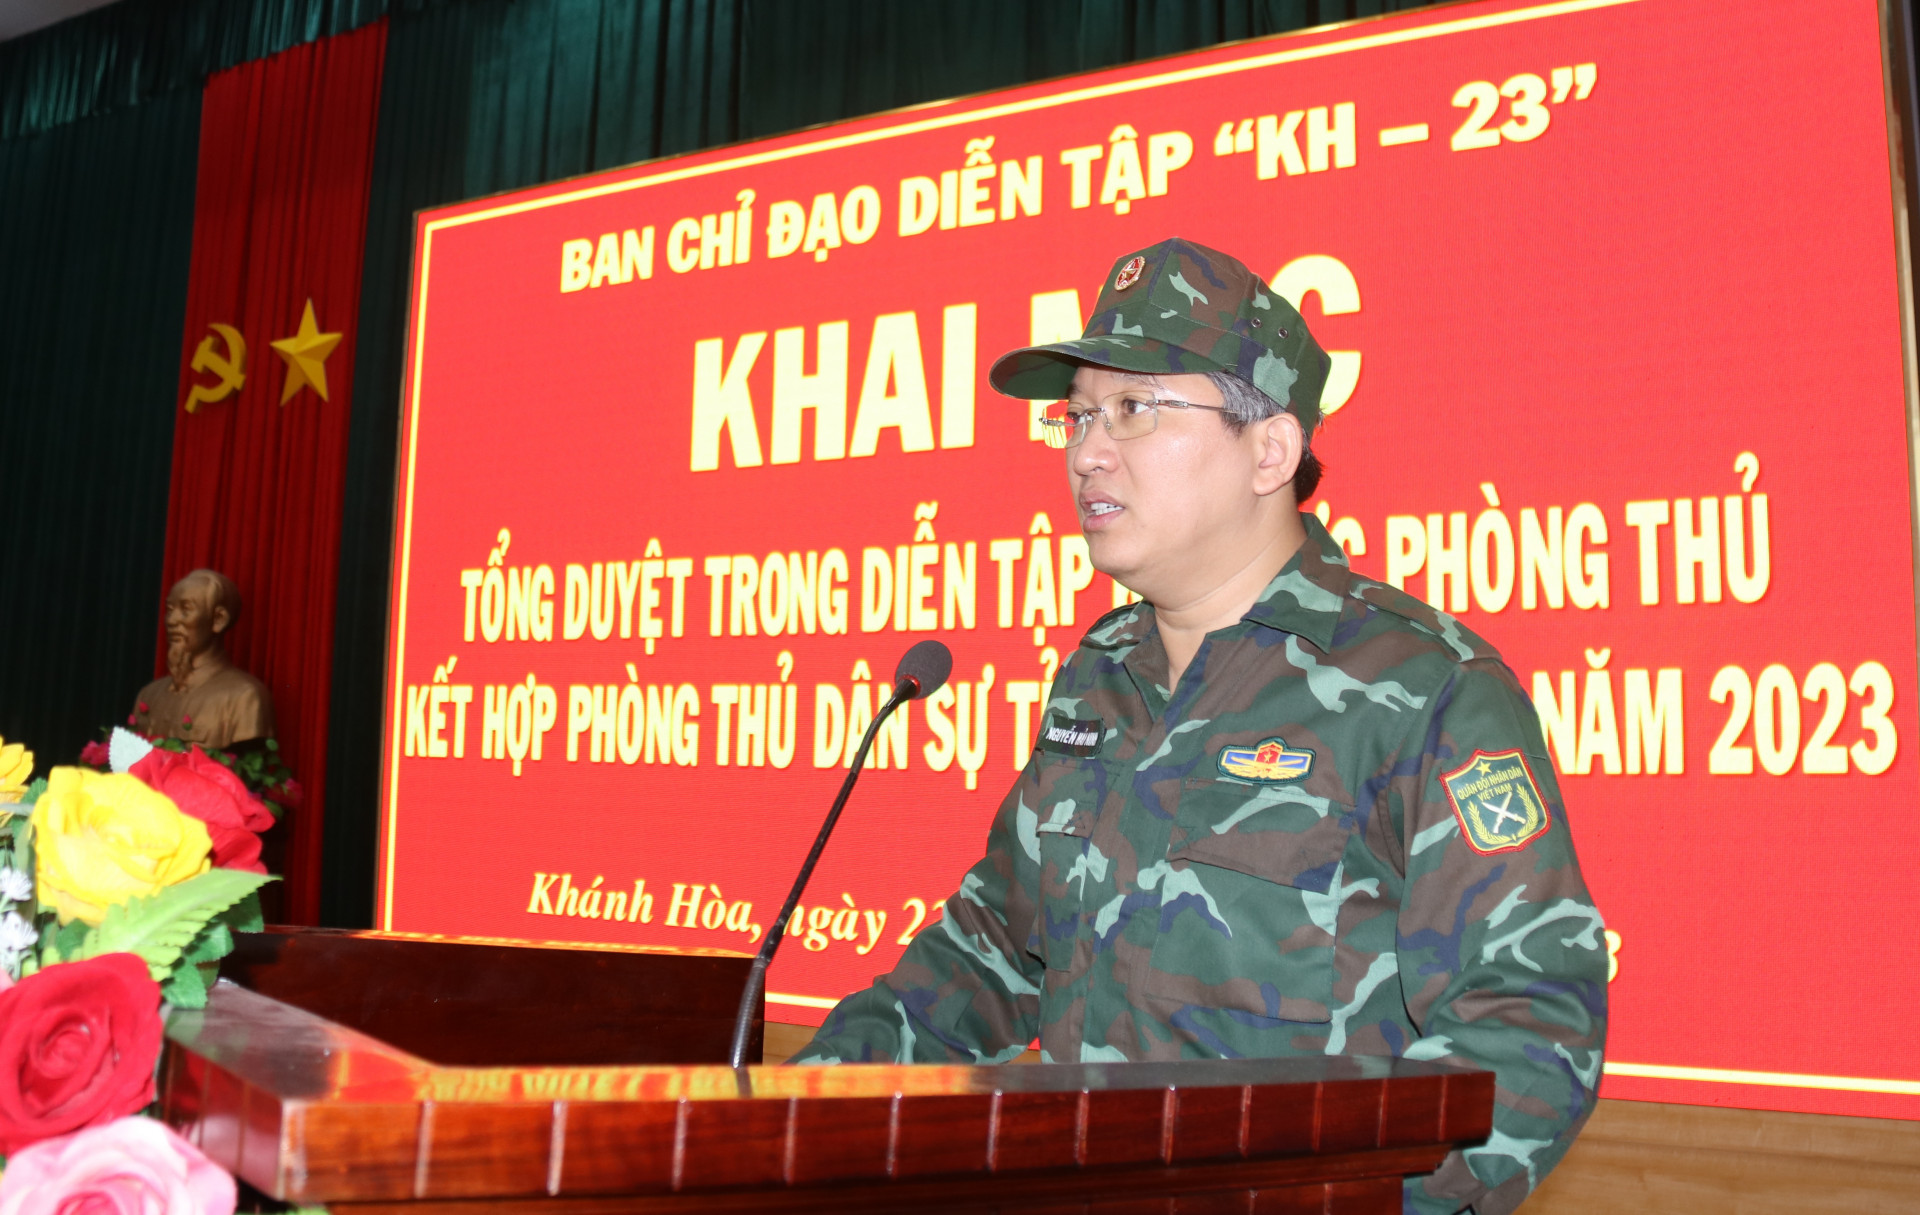 Ông Nguyễn Hải Ninh phát biểu khai mạc tổng duyệt.